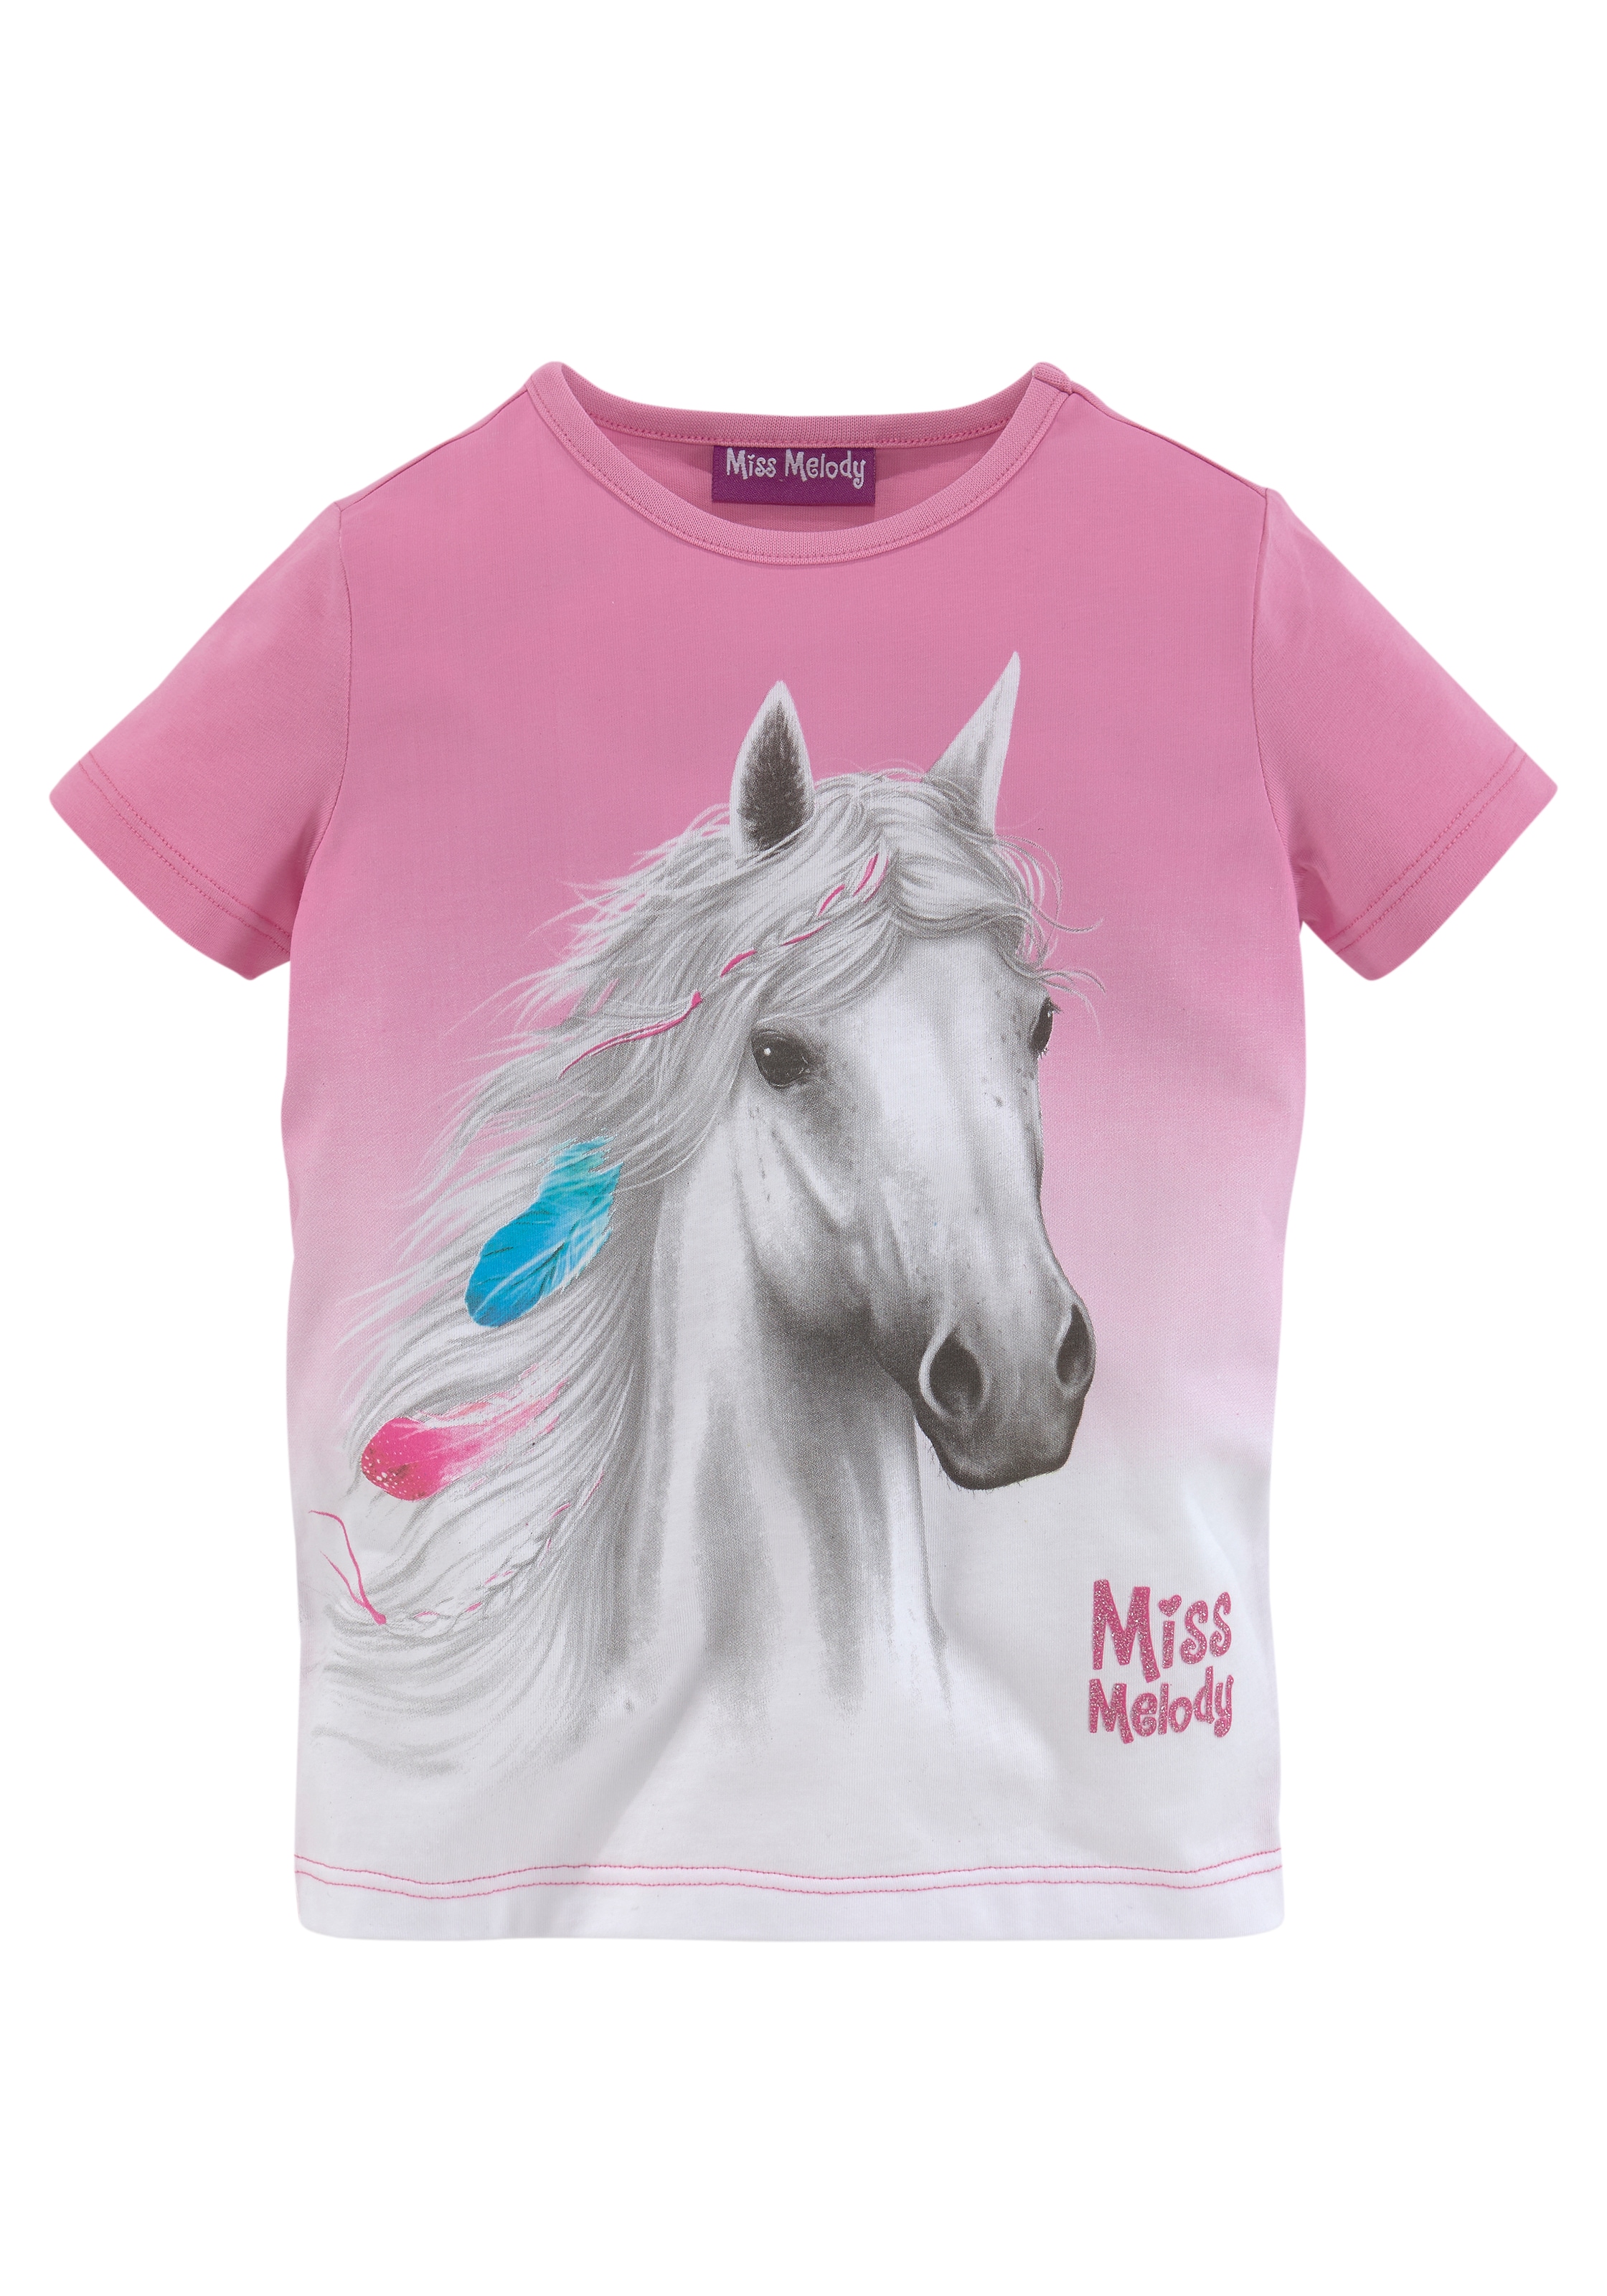 Melody OTTO Miss bei Pferdemotiv T-Shirt, mit schönem